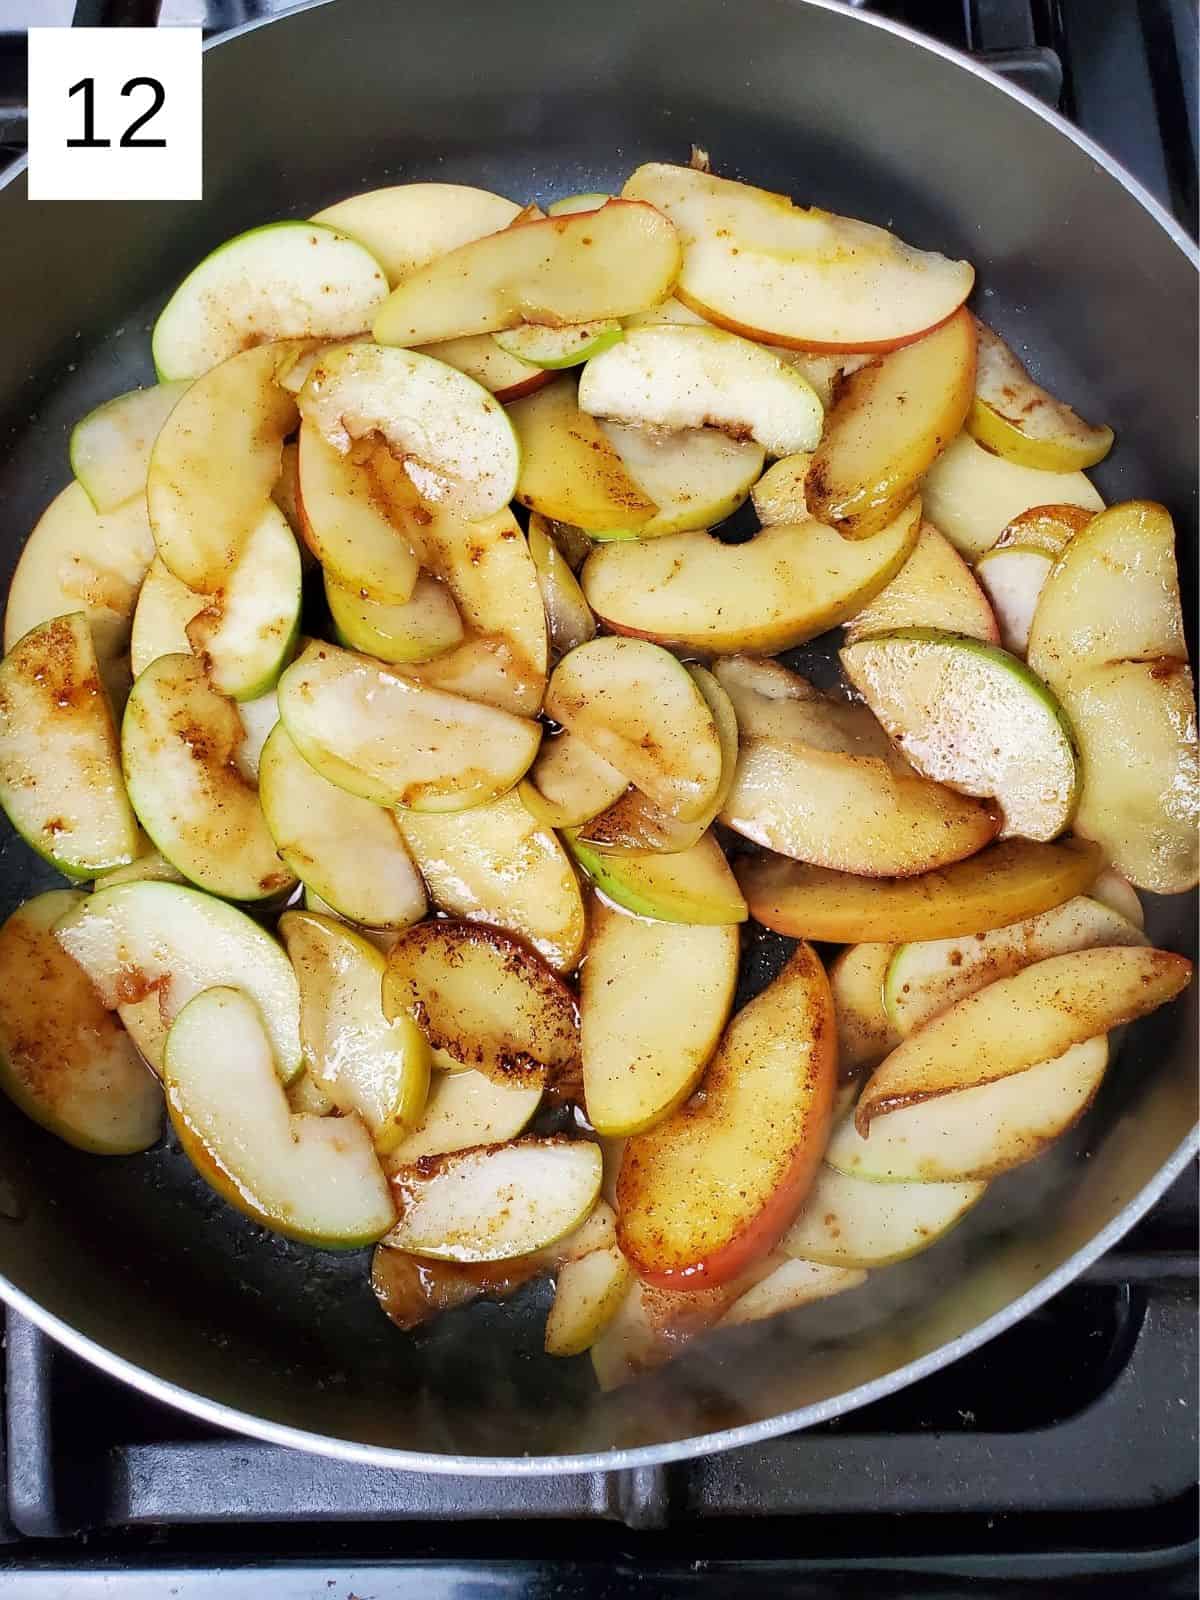 seasoned slices of apples in a pan.